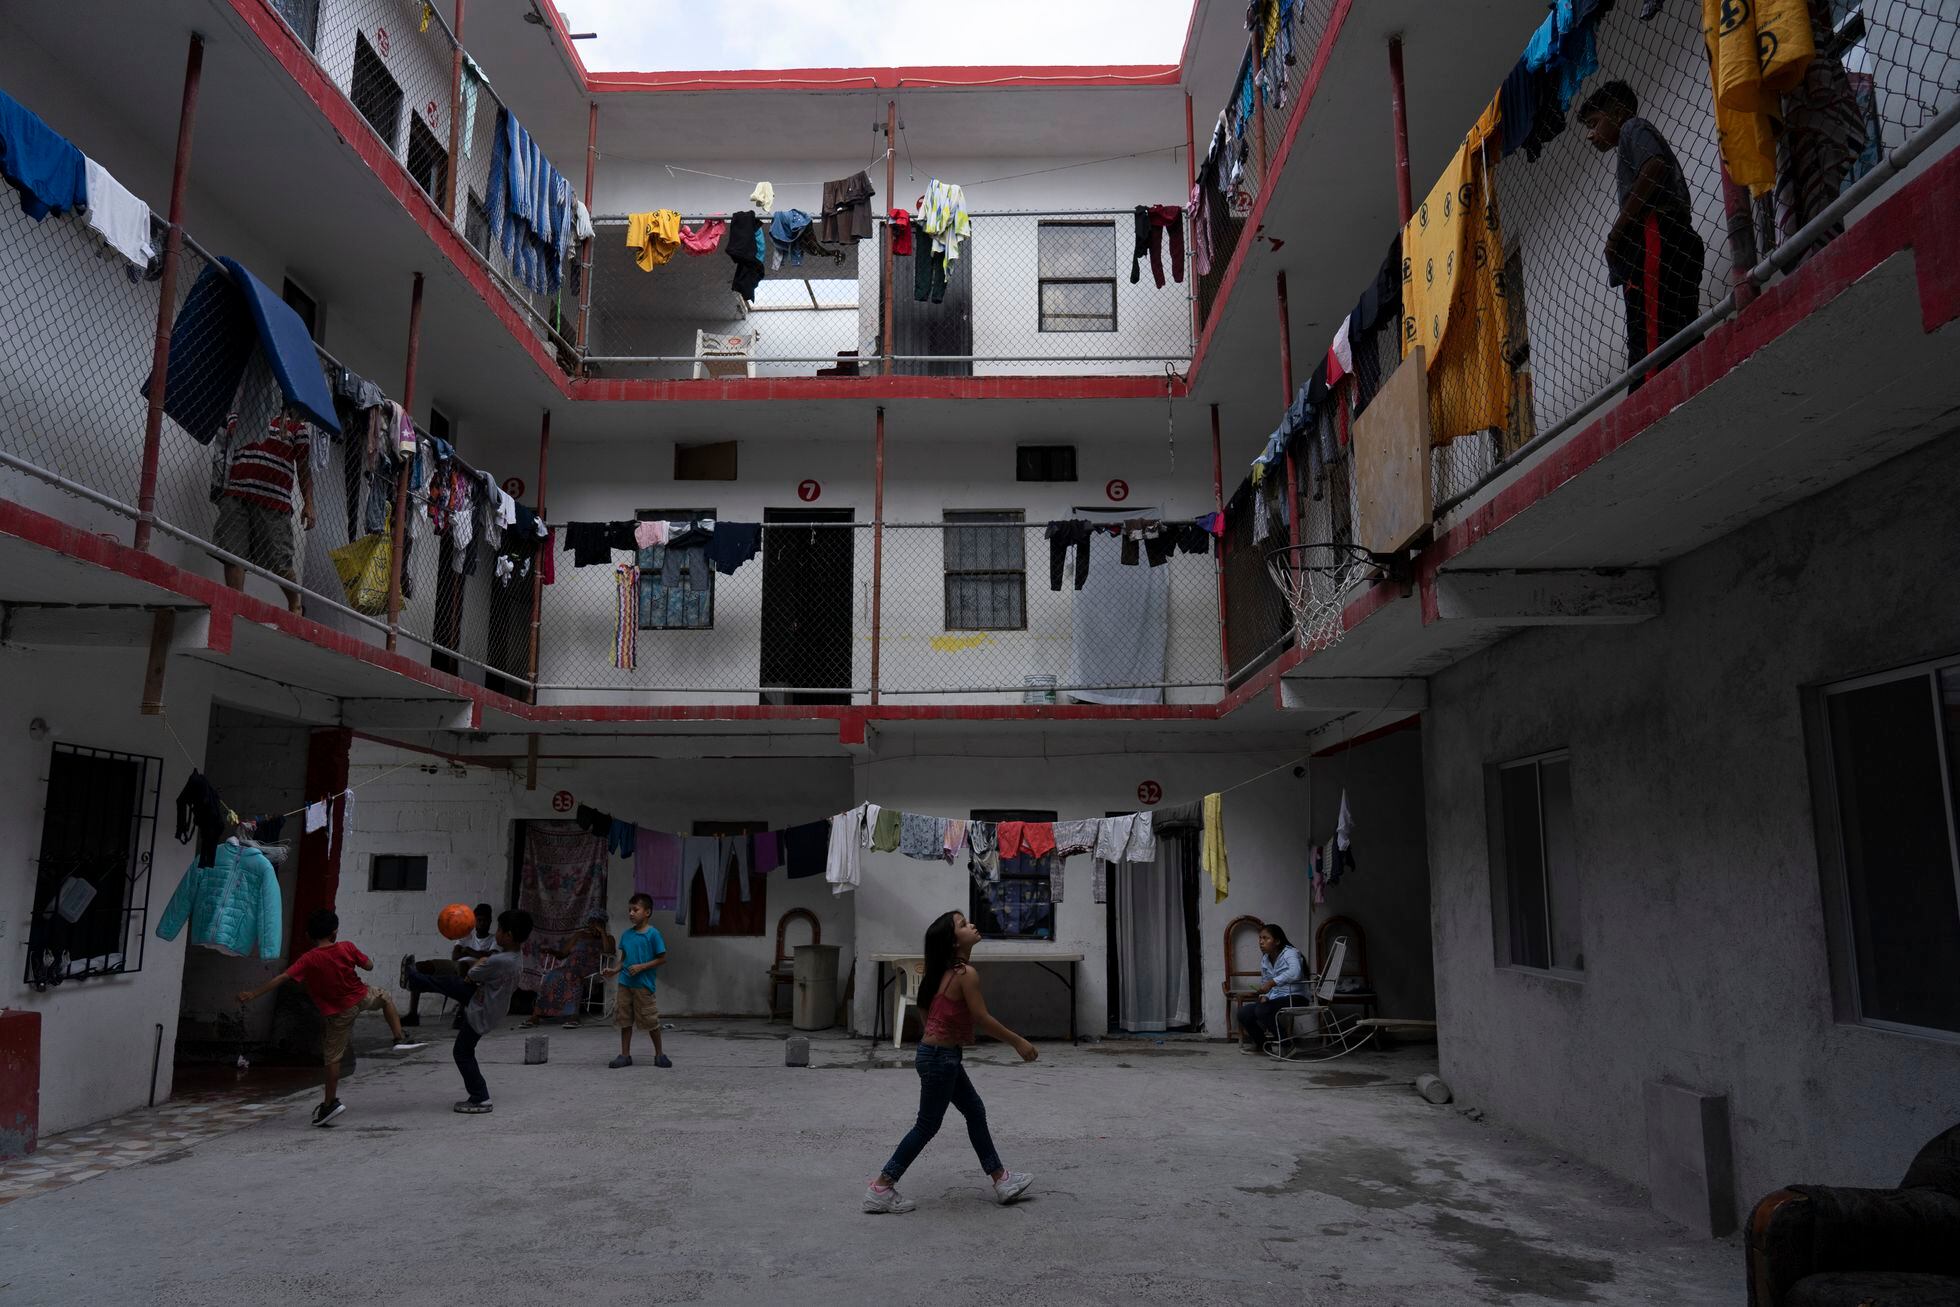 Familias de migrantes de Honduras, Guatemala y Haiti se hospedan en un pequeño hotel en la Ciudad de Reynosa, Tamaulipas, México diversas organizaciones han convencido a las familias de dejar el campamento de migrantes en una plaza pública donde duermen aproximadamente 400 personas. 